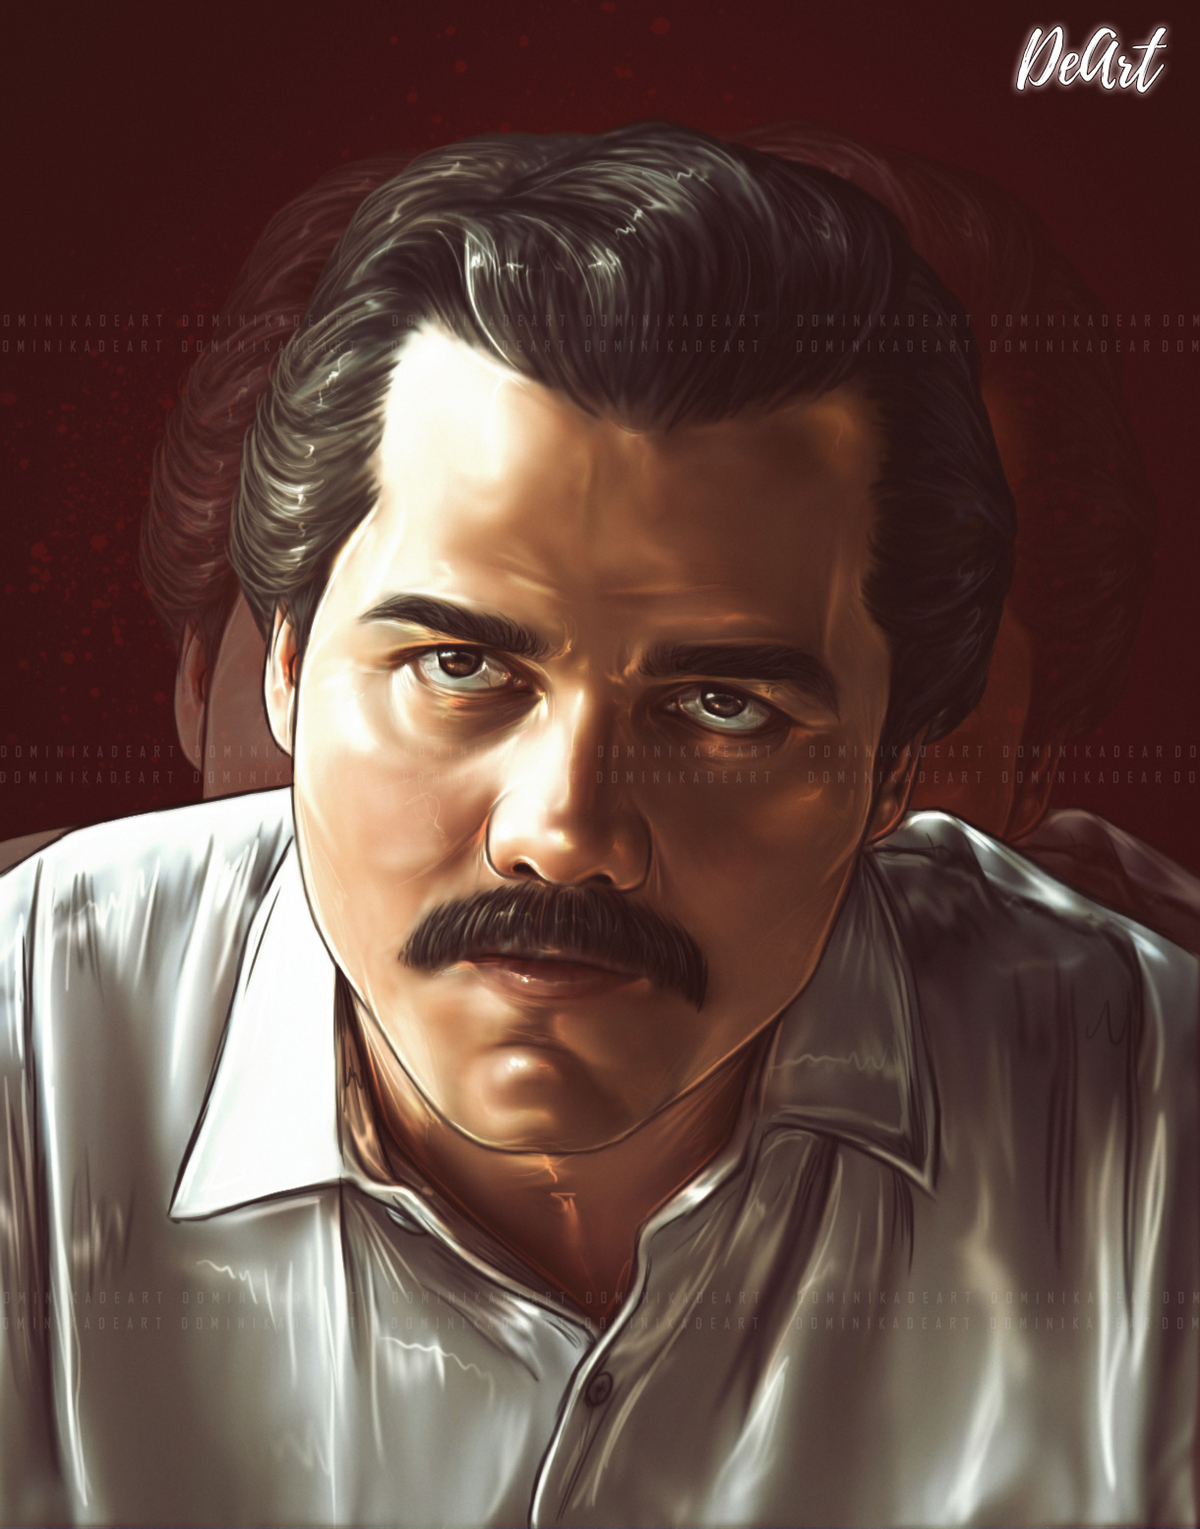 escobar narcos Pablo Escobar cocaine colombia design tshirt Digital Arts